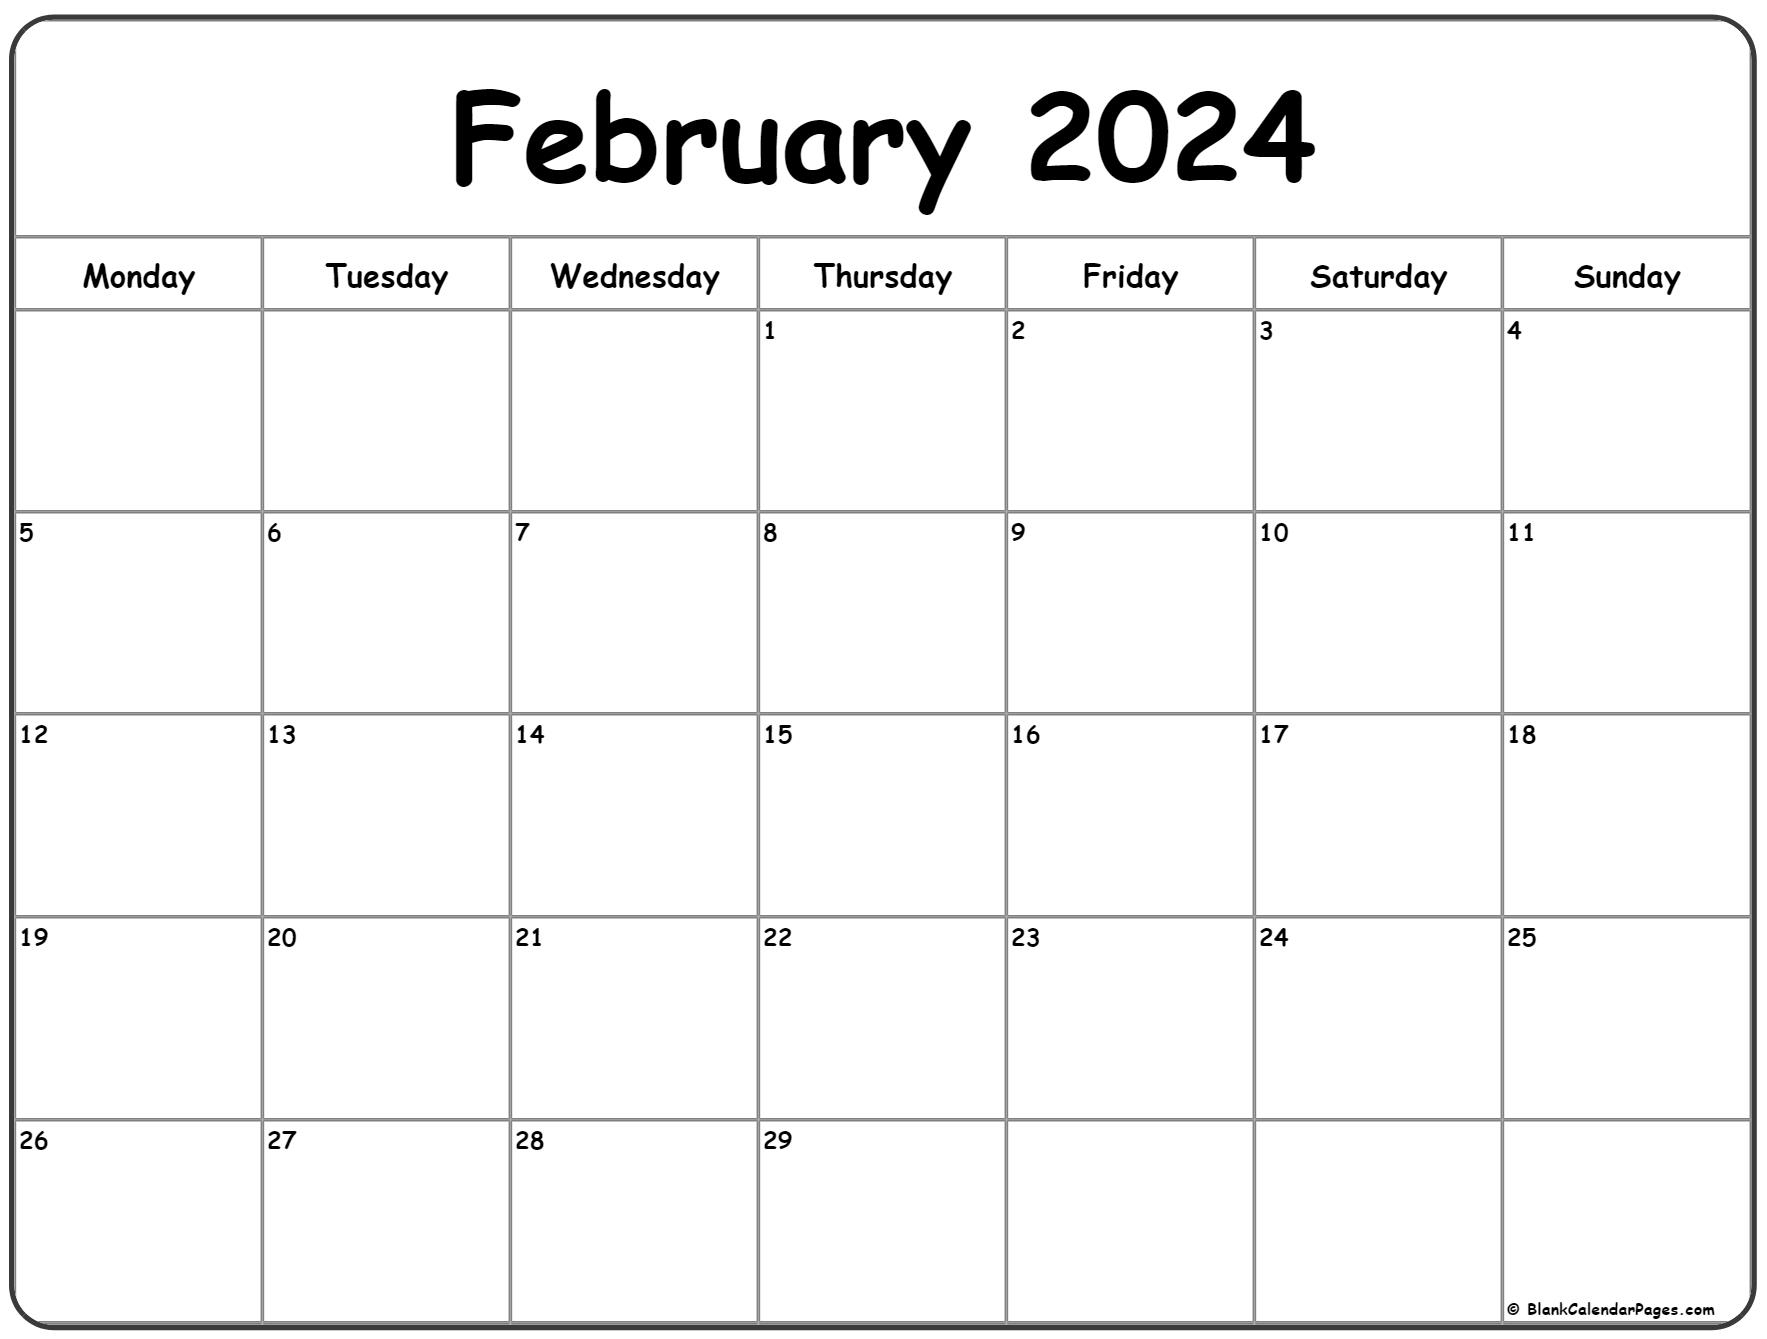 February 2024 Monday Calendar | Monday To Sunday for 2024 Printable February Calendar